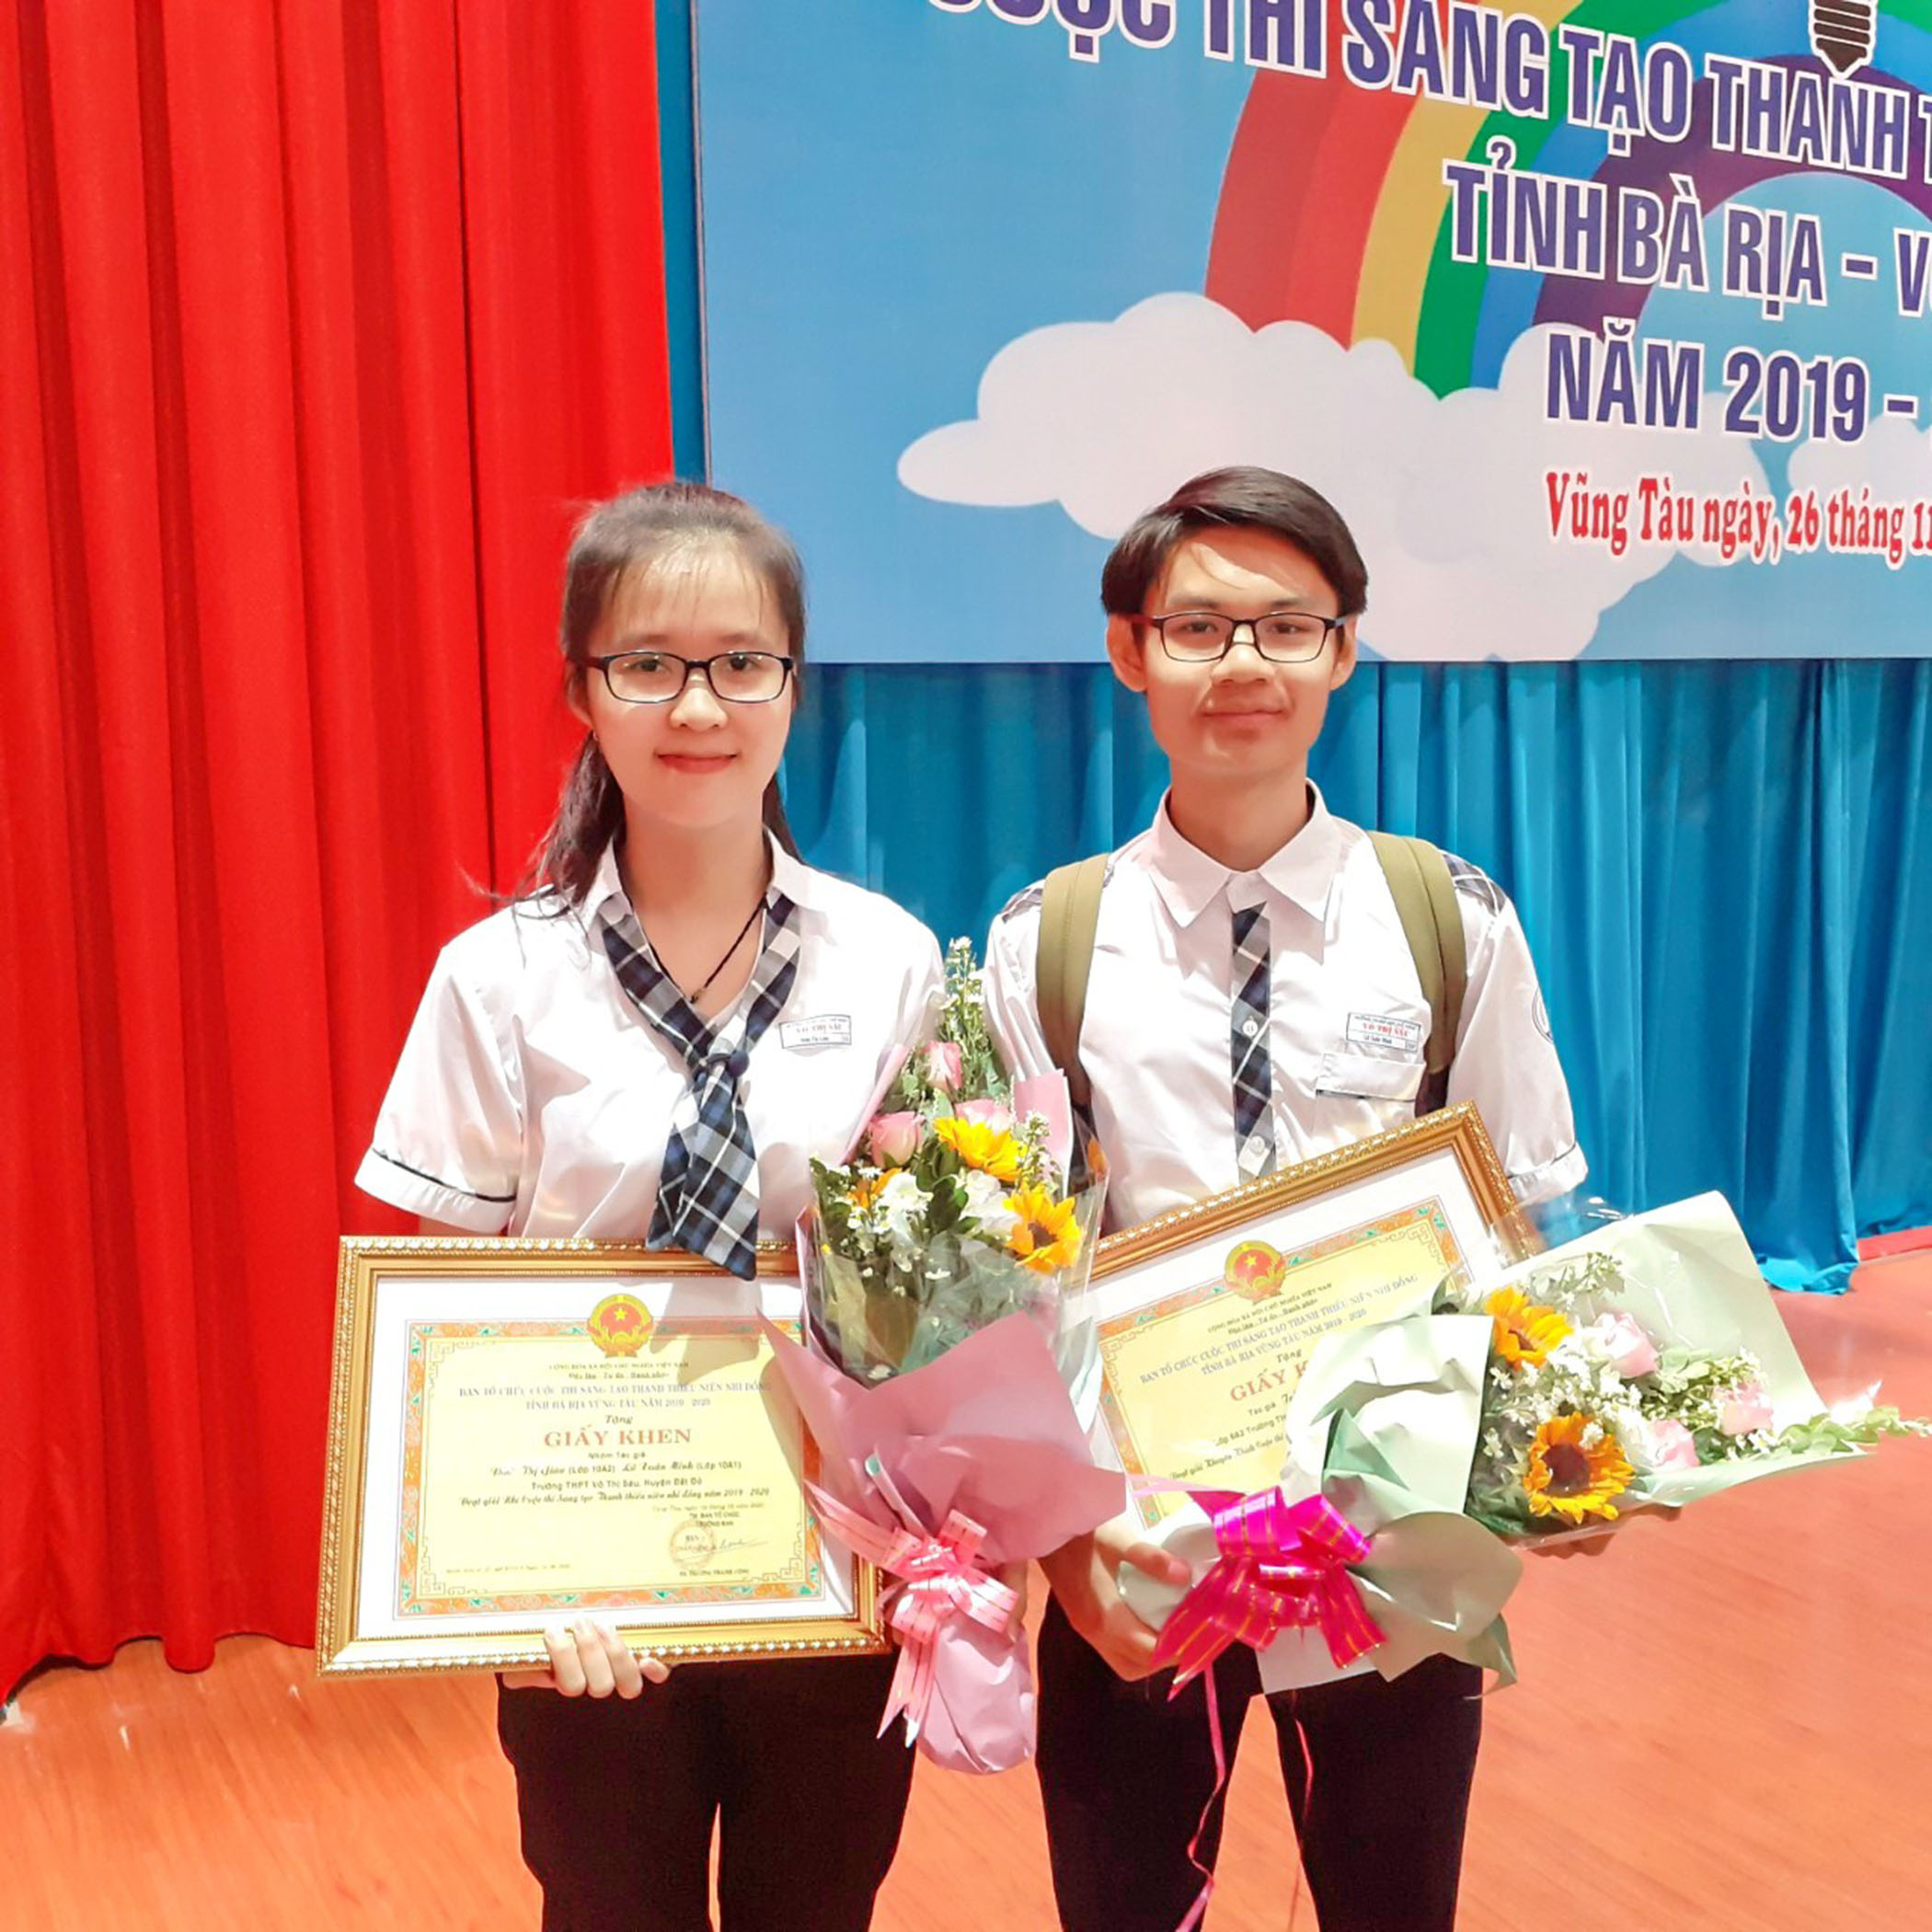 Đinh Thị Giàu và Lữ Xuân Minh lọt vào vòng chung kết chương trình “Tri thức trẻ vì giáo dục” năm 2020 do Trung ương Đoàn tổ chức với thiết kế “Bàn học chữ nổi đa năng dành cho HS khiếm thị”.